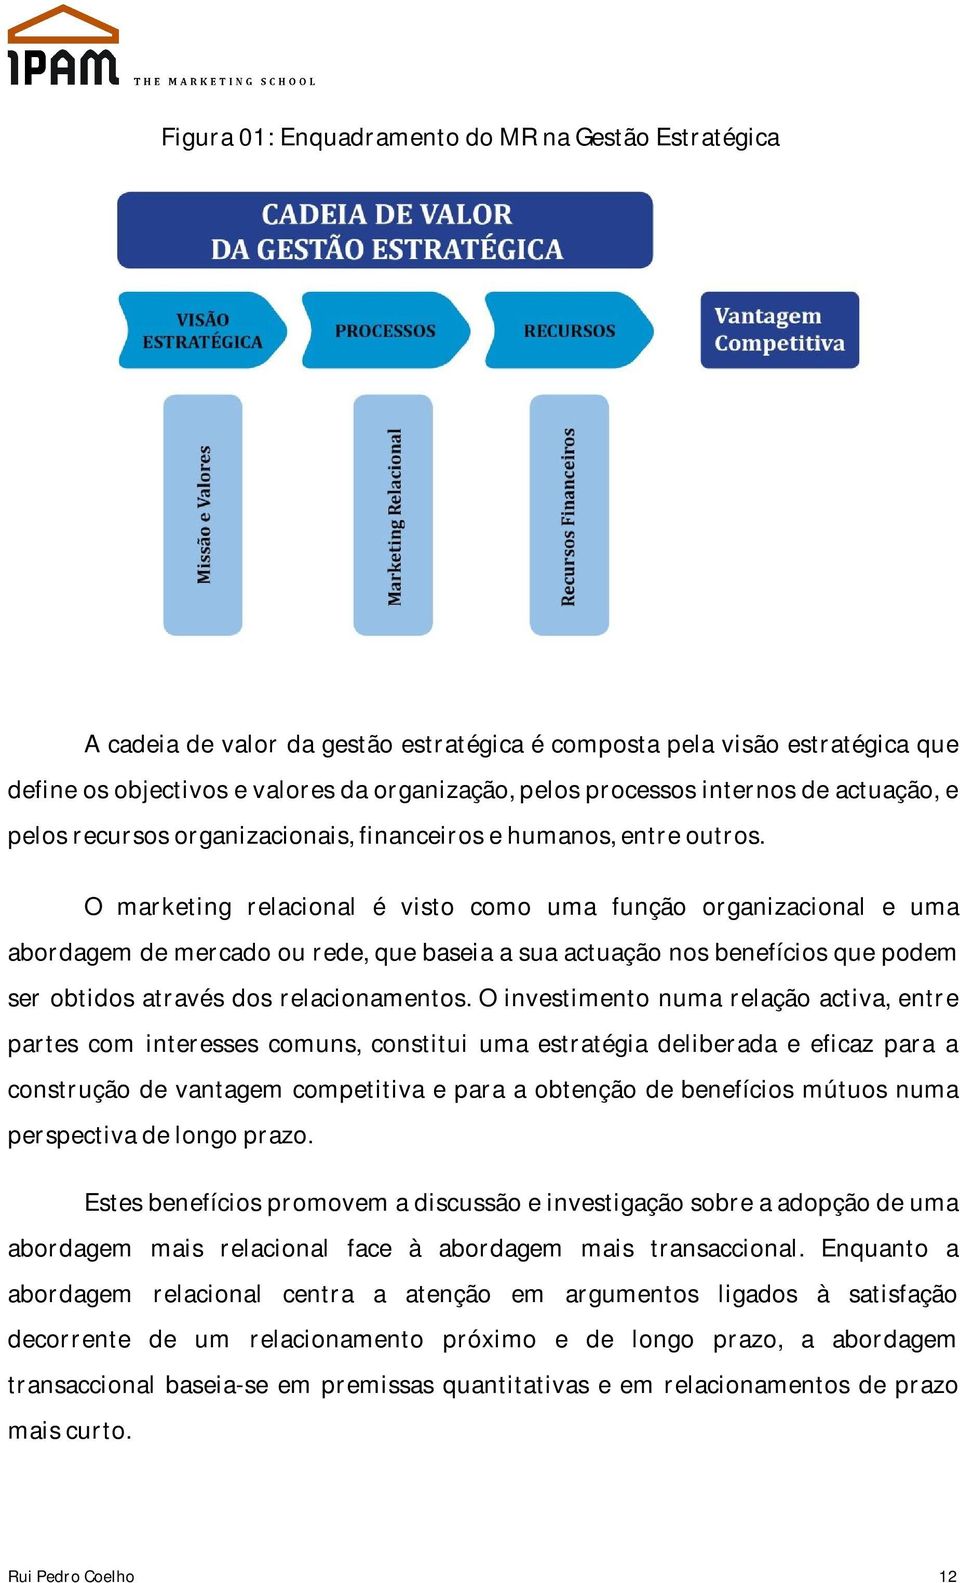 O marketing relacional é visto como uma função organizacional e uma abordagem de mercado ou rede, que baseia a sua actuação nos benefícios que podem ser obtidos através dos relacionamentos.